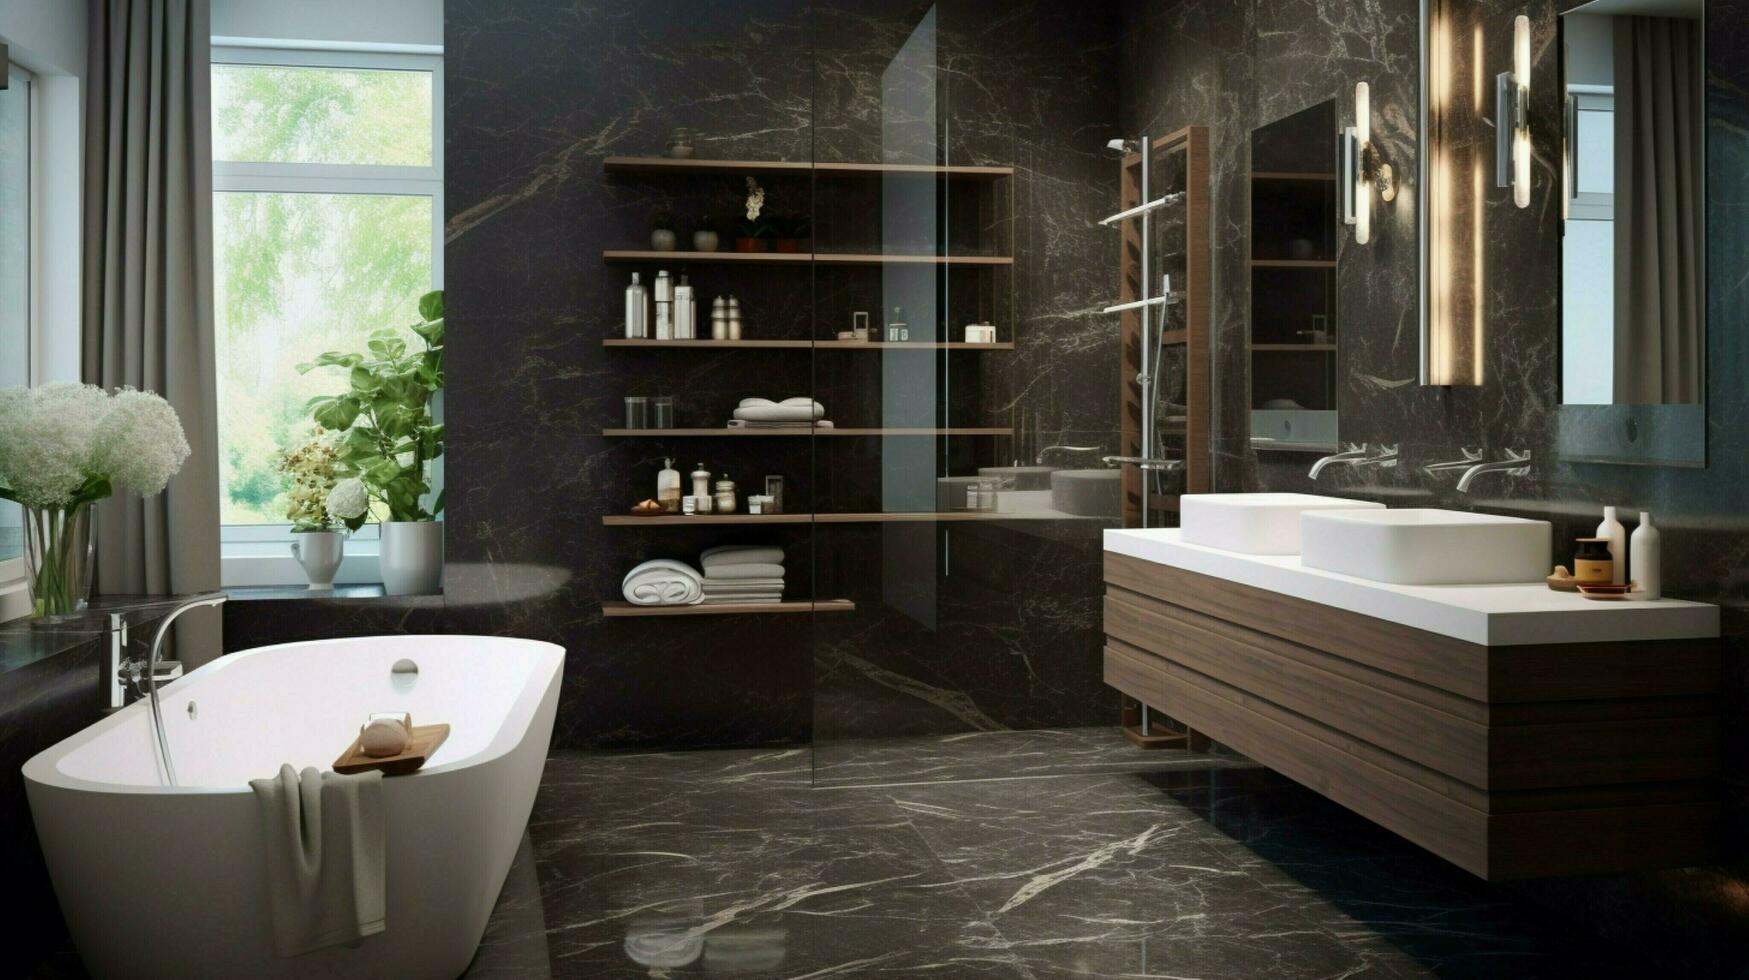 moderno Doméstico baño con elegante estilo foto